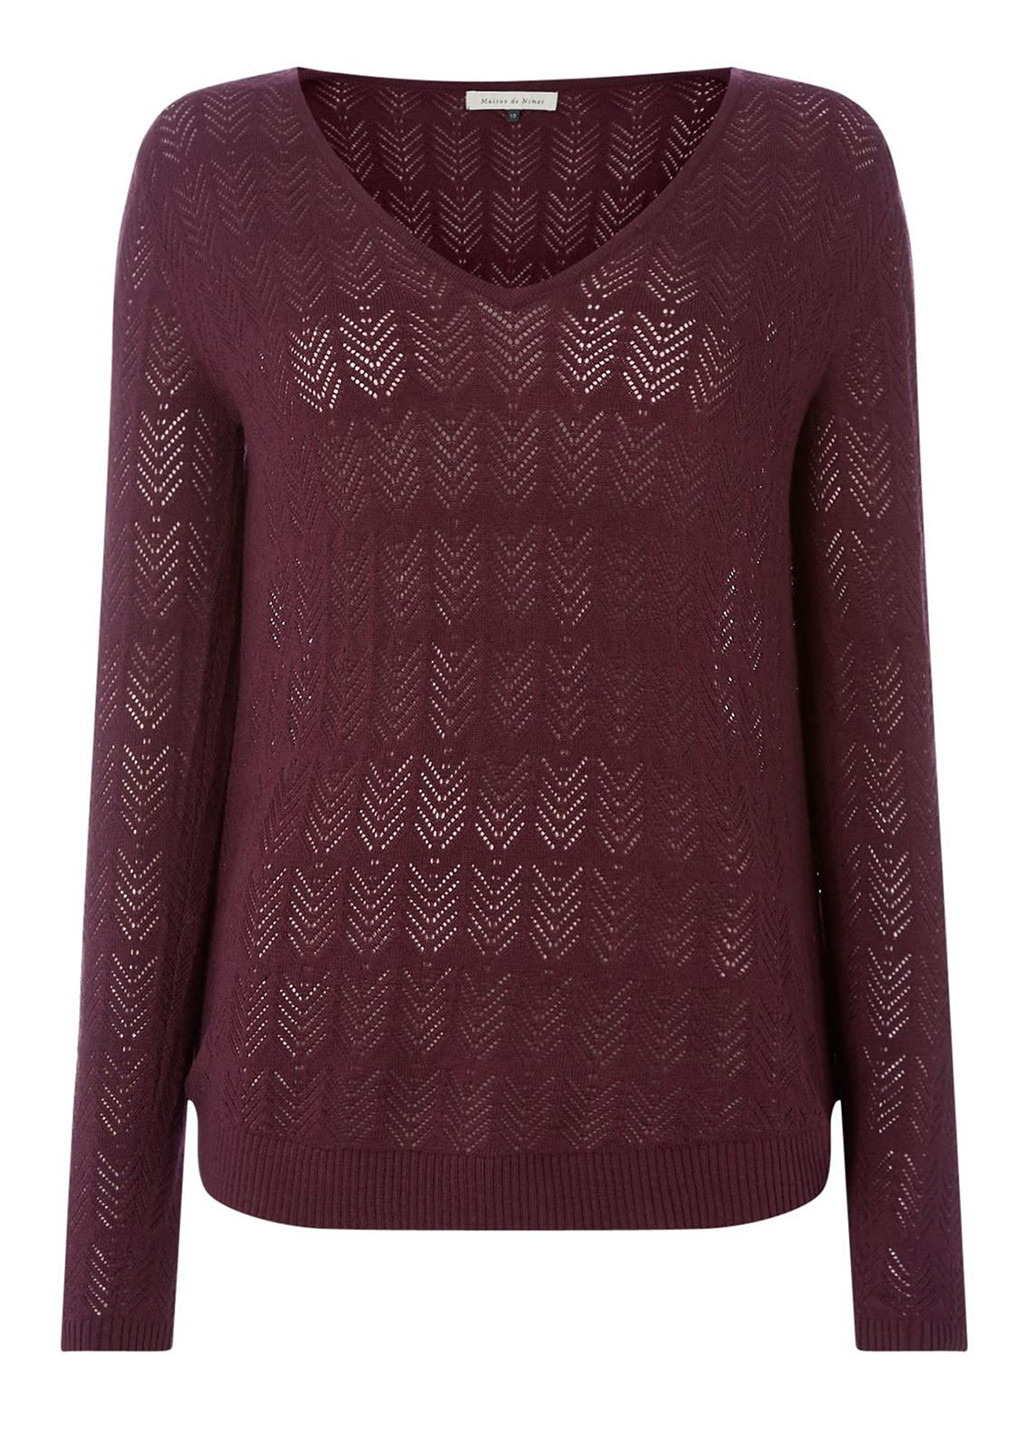 Бордовый демисезонный пуловер пуловер Maison De Nimes